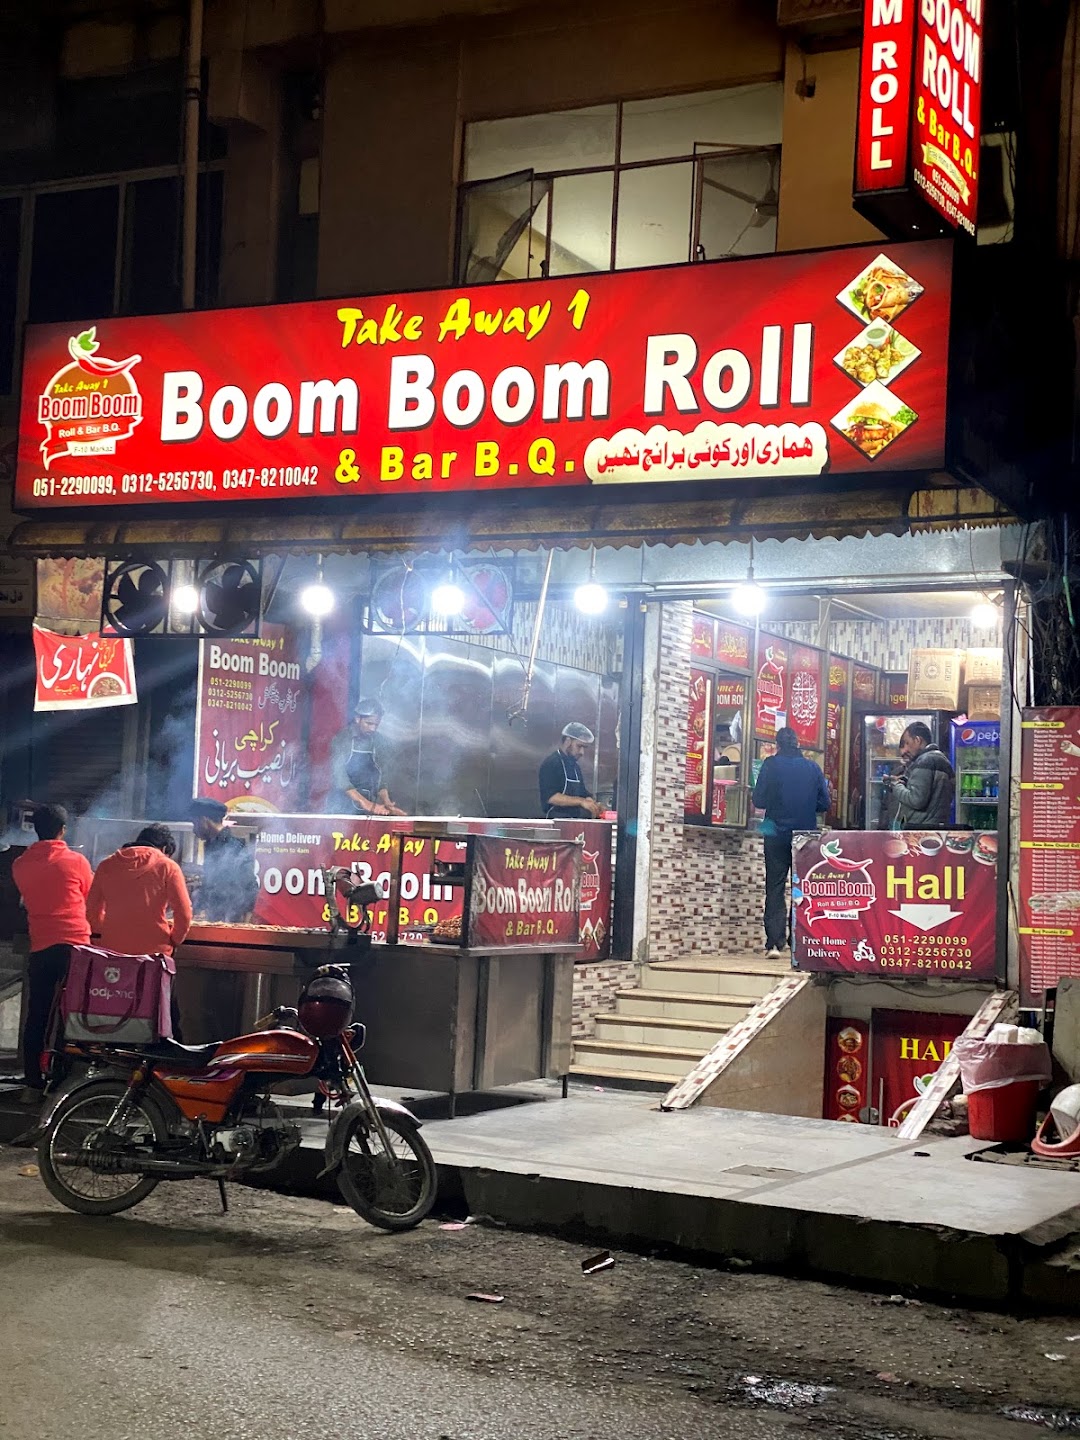 Boom Boom Roll & B.B.Q